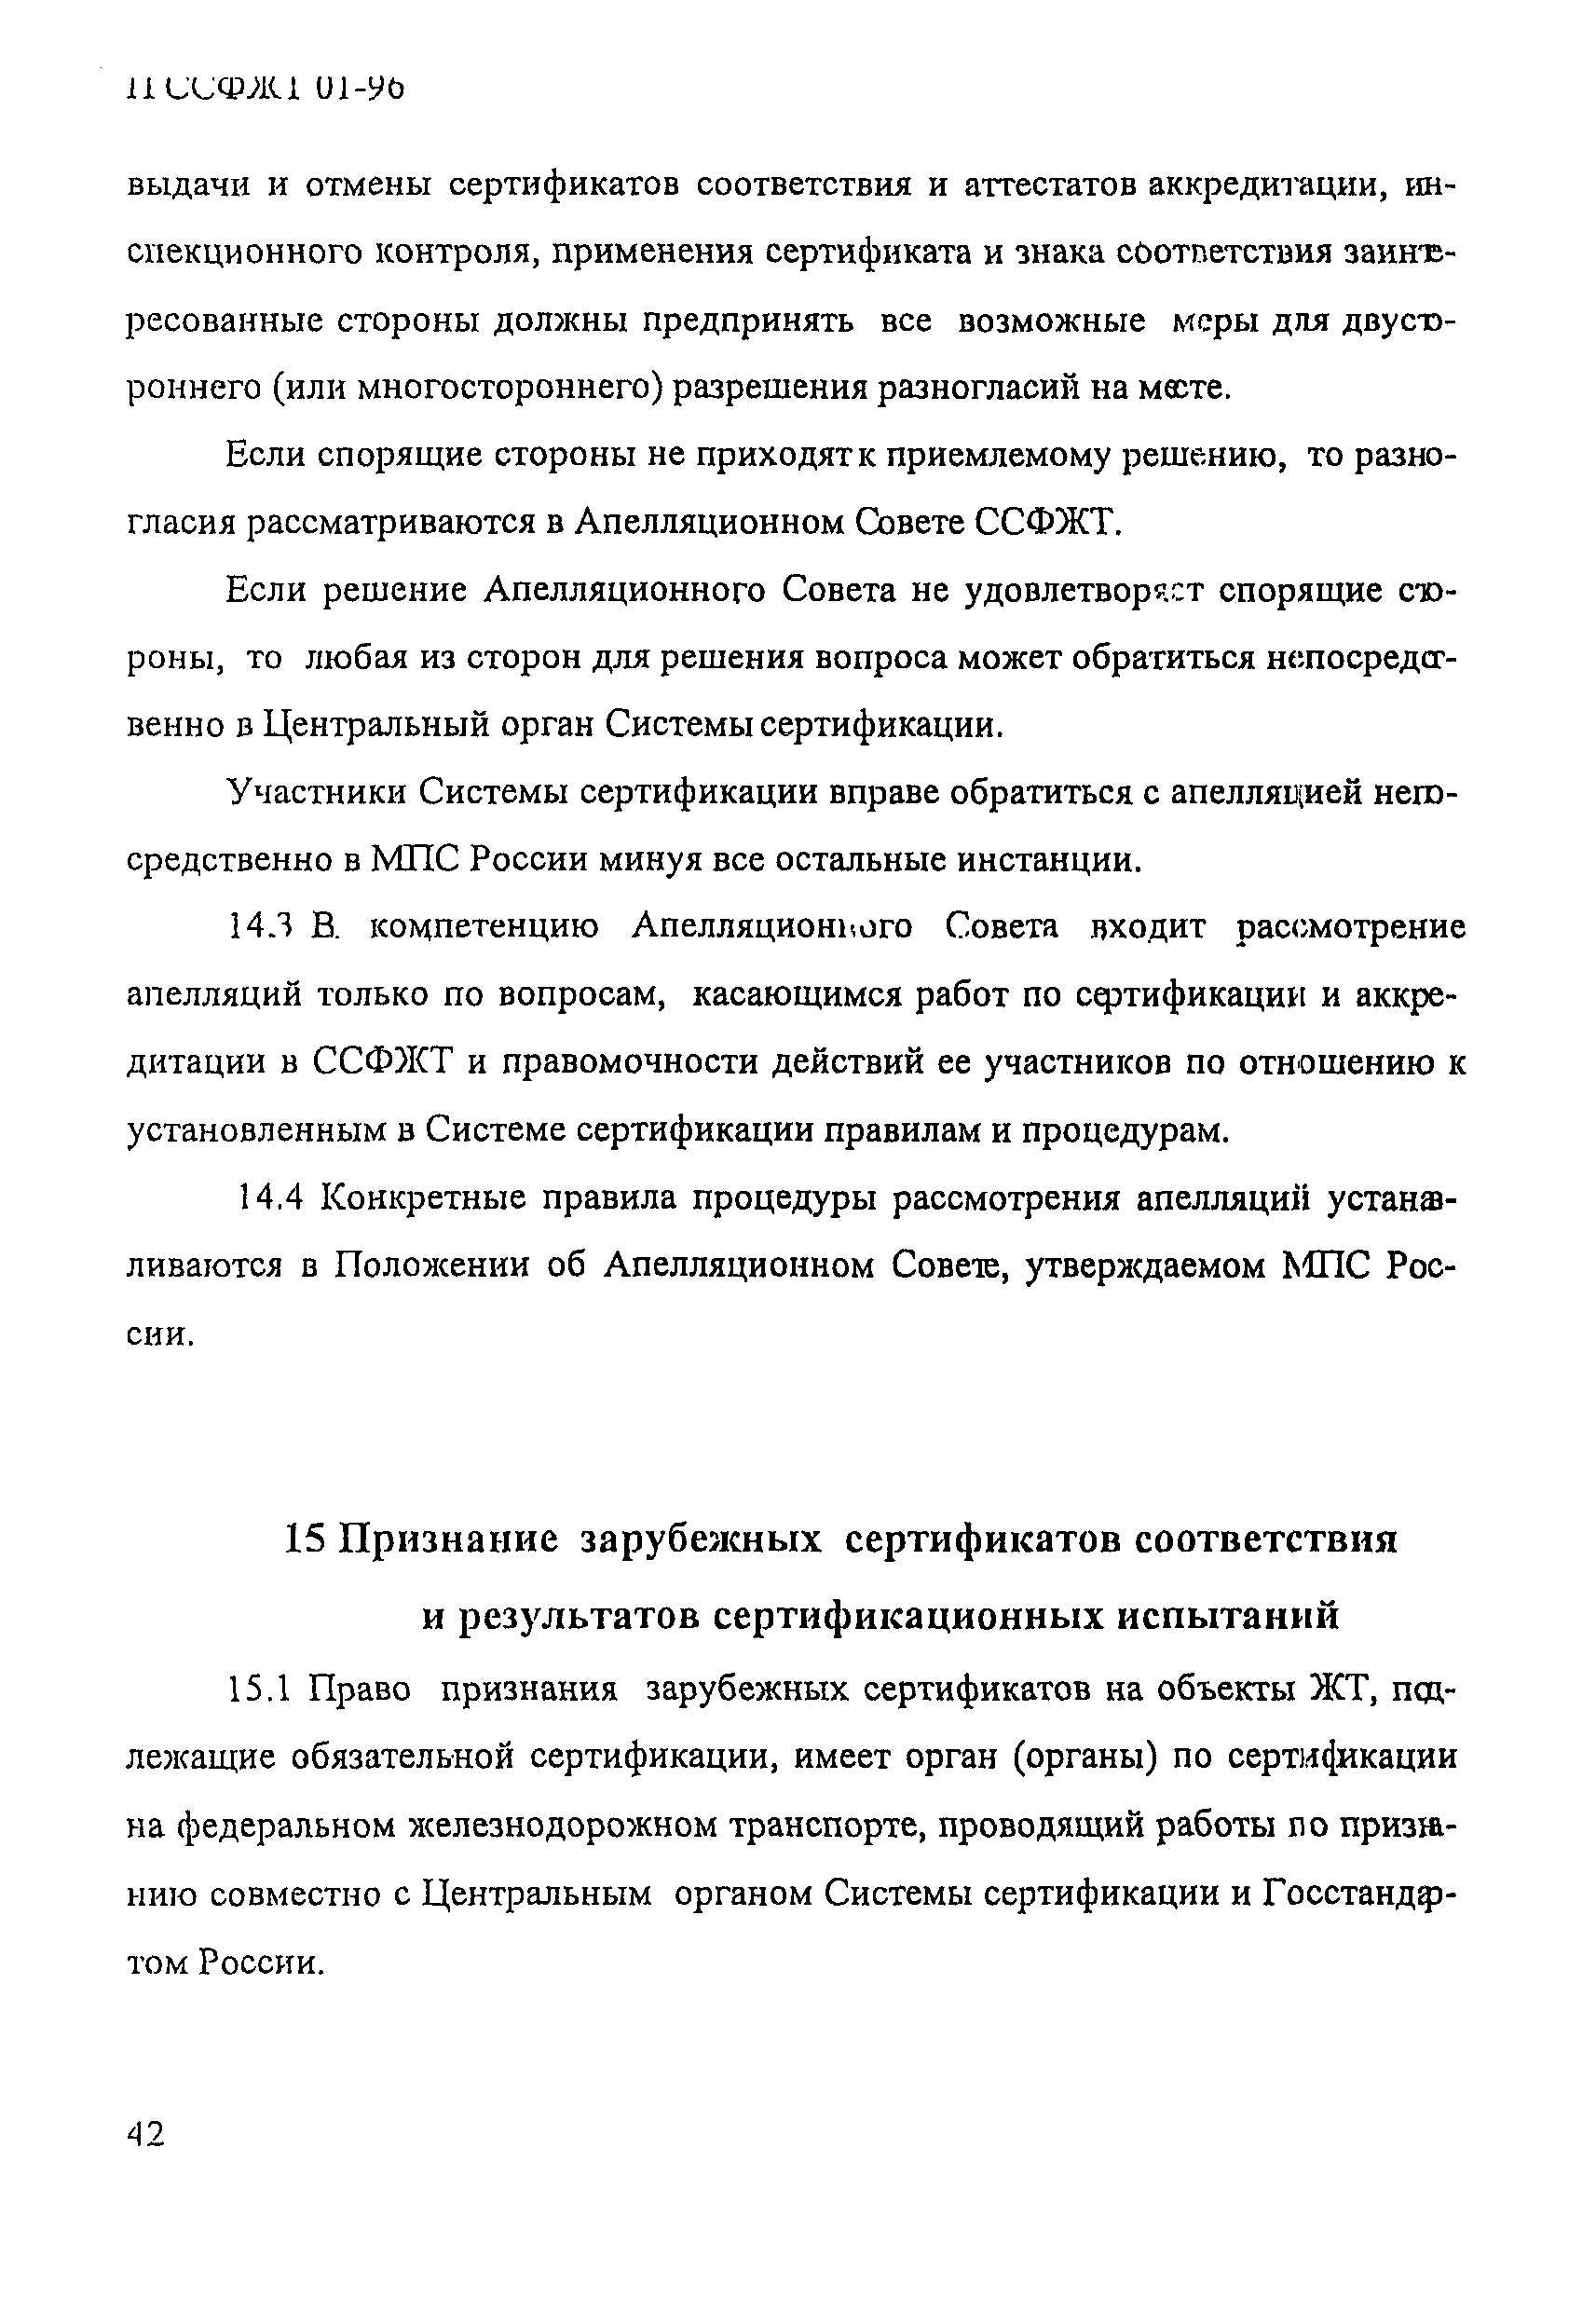 П ССФЖТ 01-96